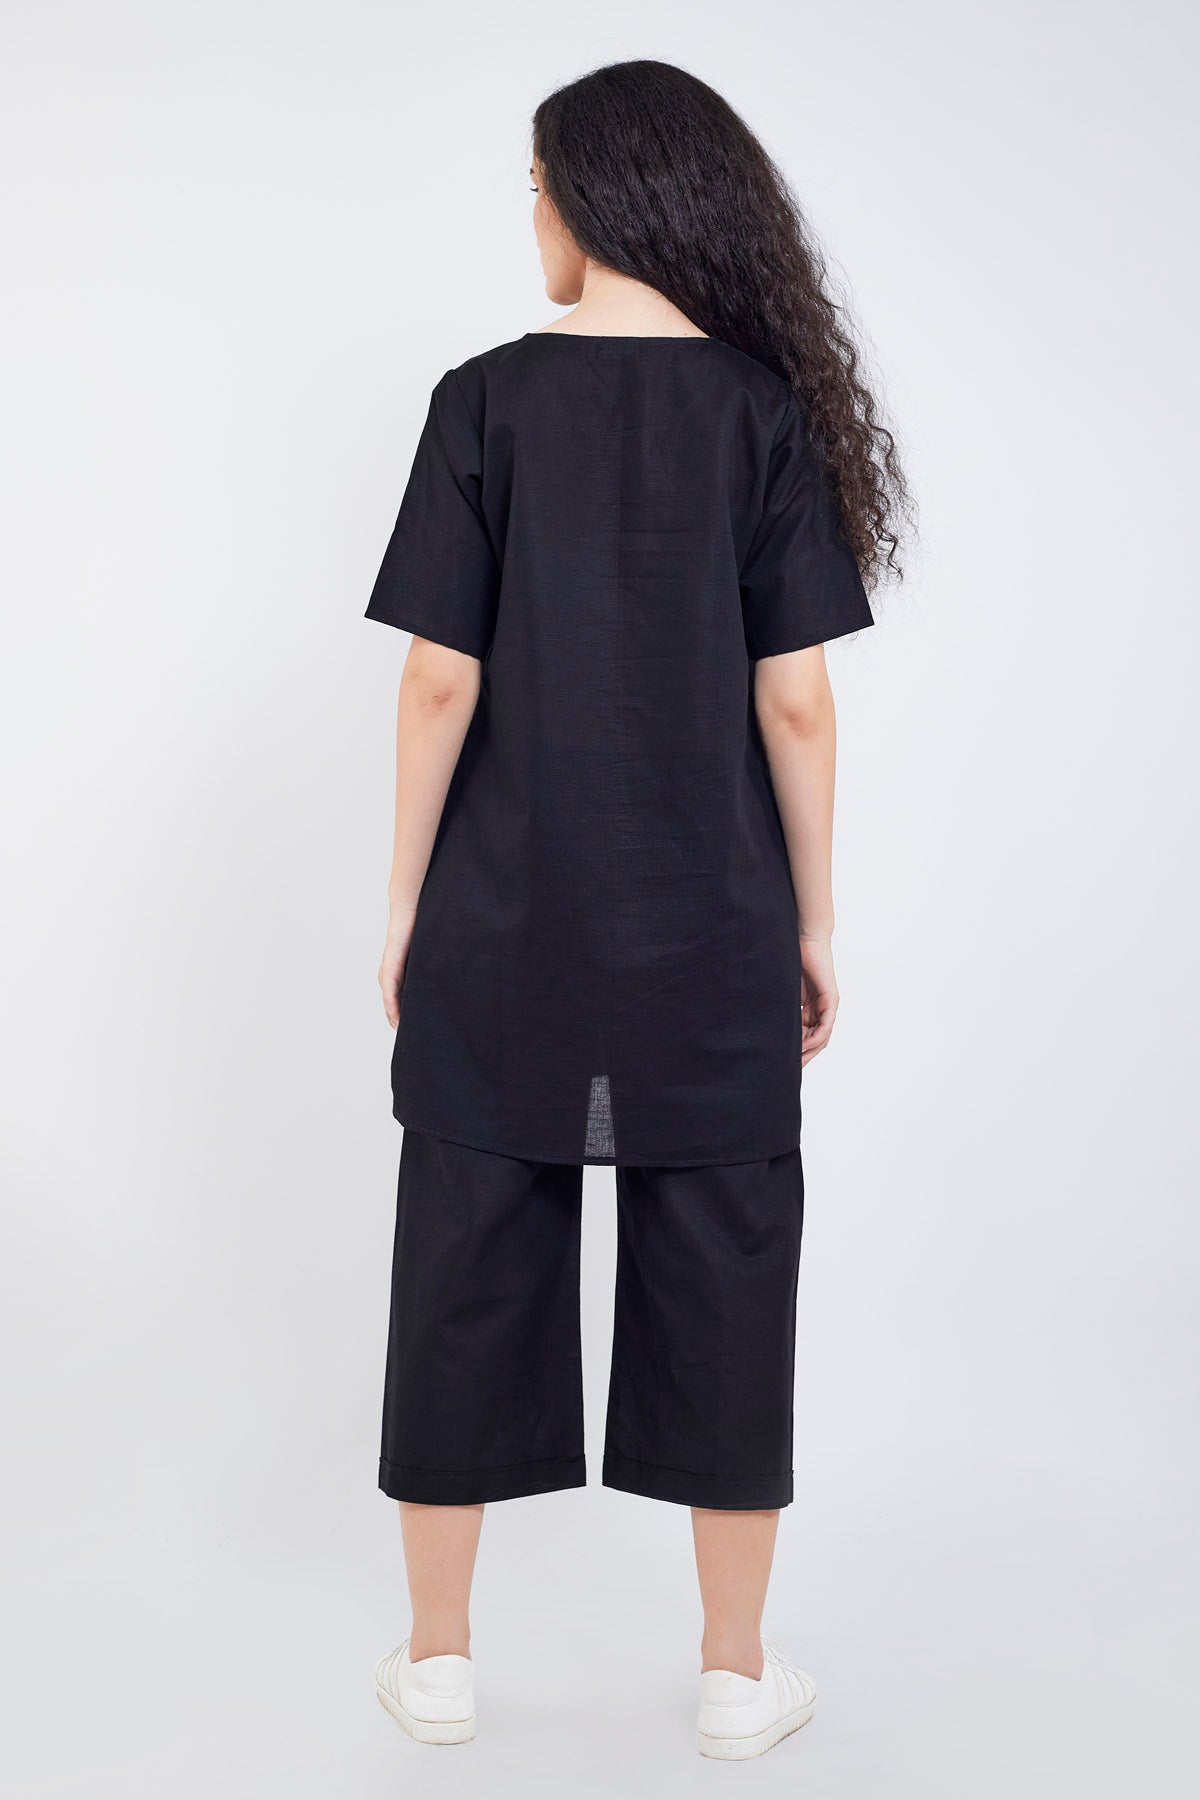 Black Cotton Linen Tunic Set